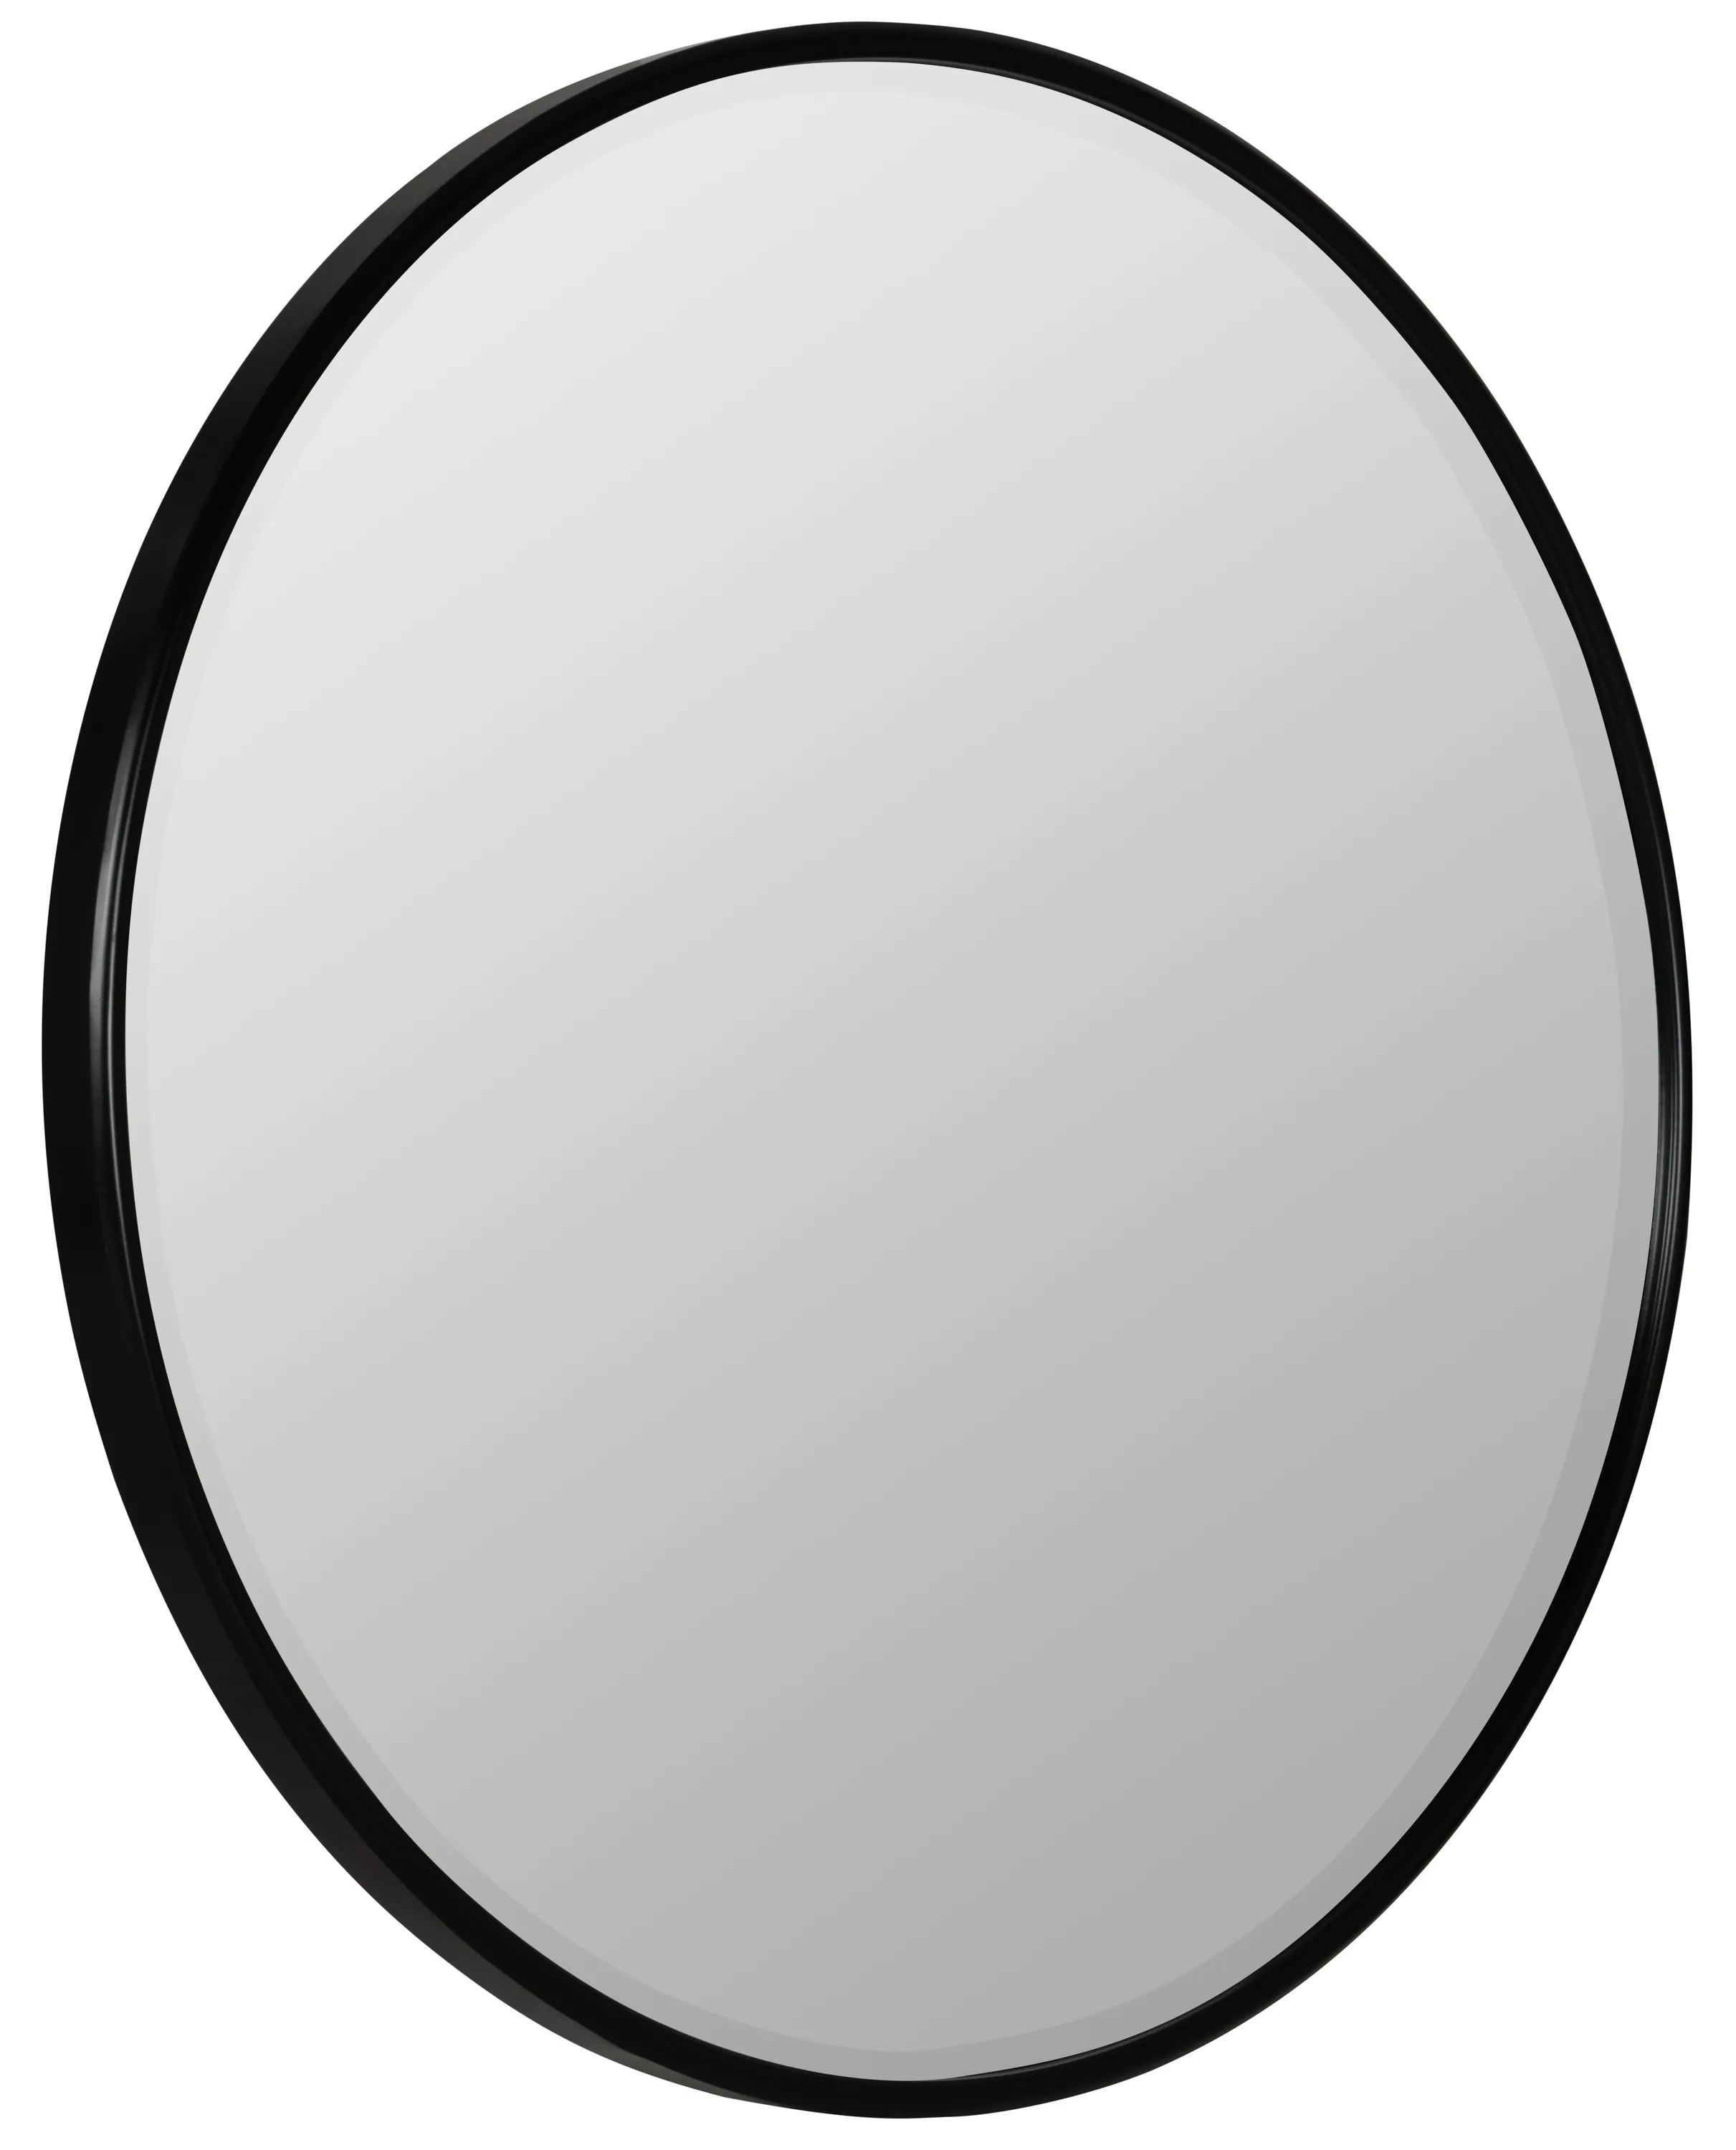 Jemma Round Wall Mirror - Matte Black